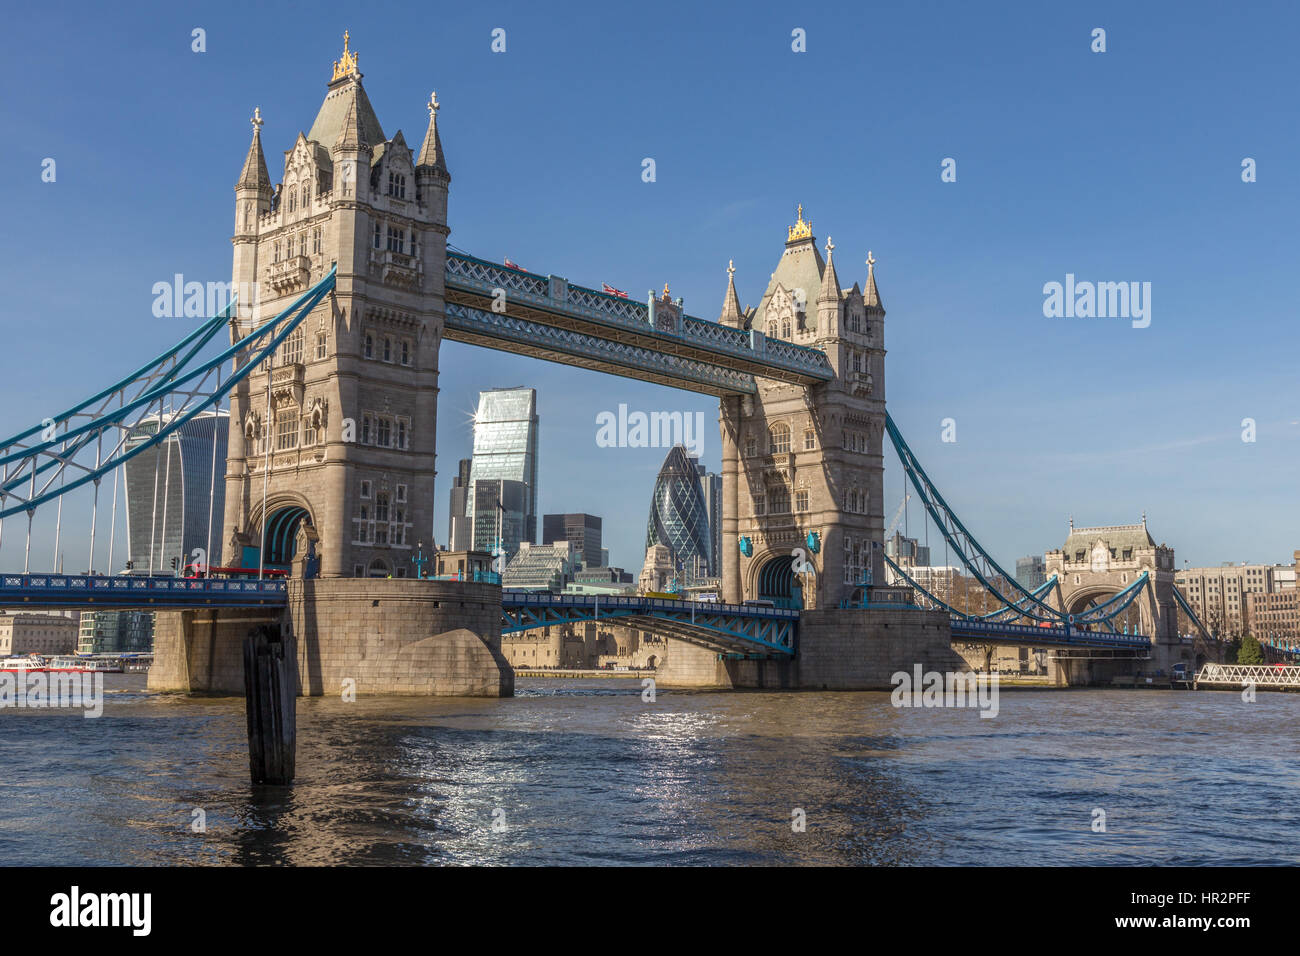 La London Tower Bridge, à partir de la rive sud de la rivière. Pris par un après-midi ensoleillé et présente le nouveau bâtiments gratte-ciel de la ville. Banque D'Images